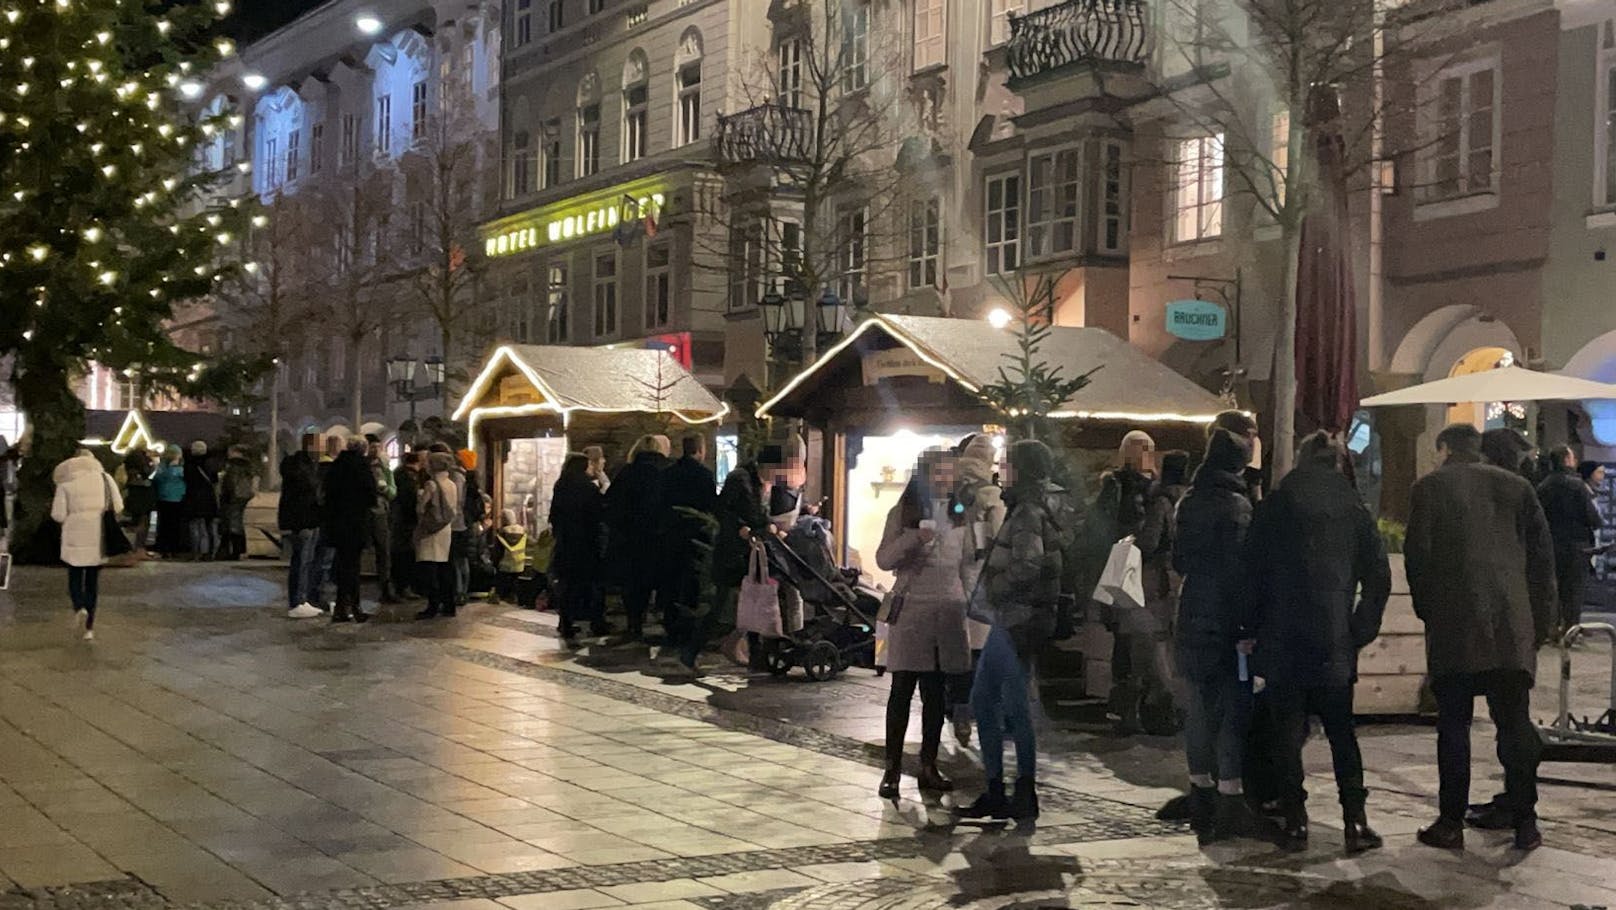 Mit Punsch und Glühwein stehen die Leute neben den Märchen-Hütten am Linzer Hauptplatz. Der heimliche Christkindlmarkt sorgt jetzt für Ärger.